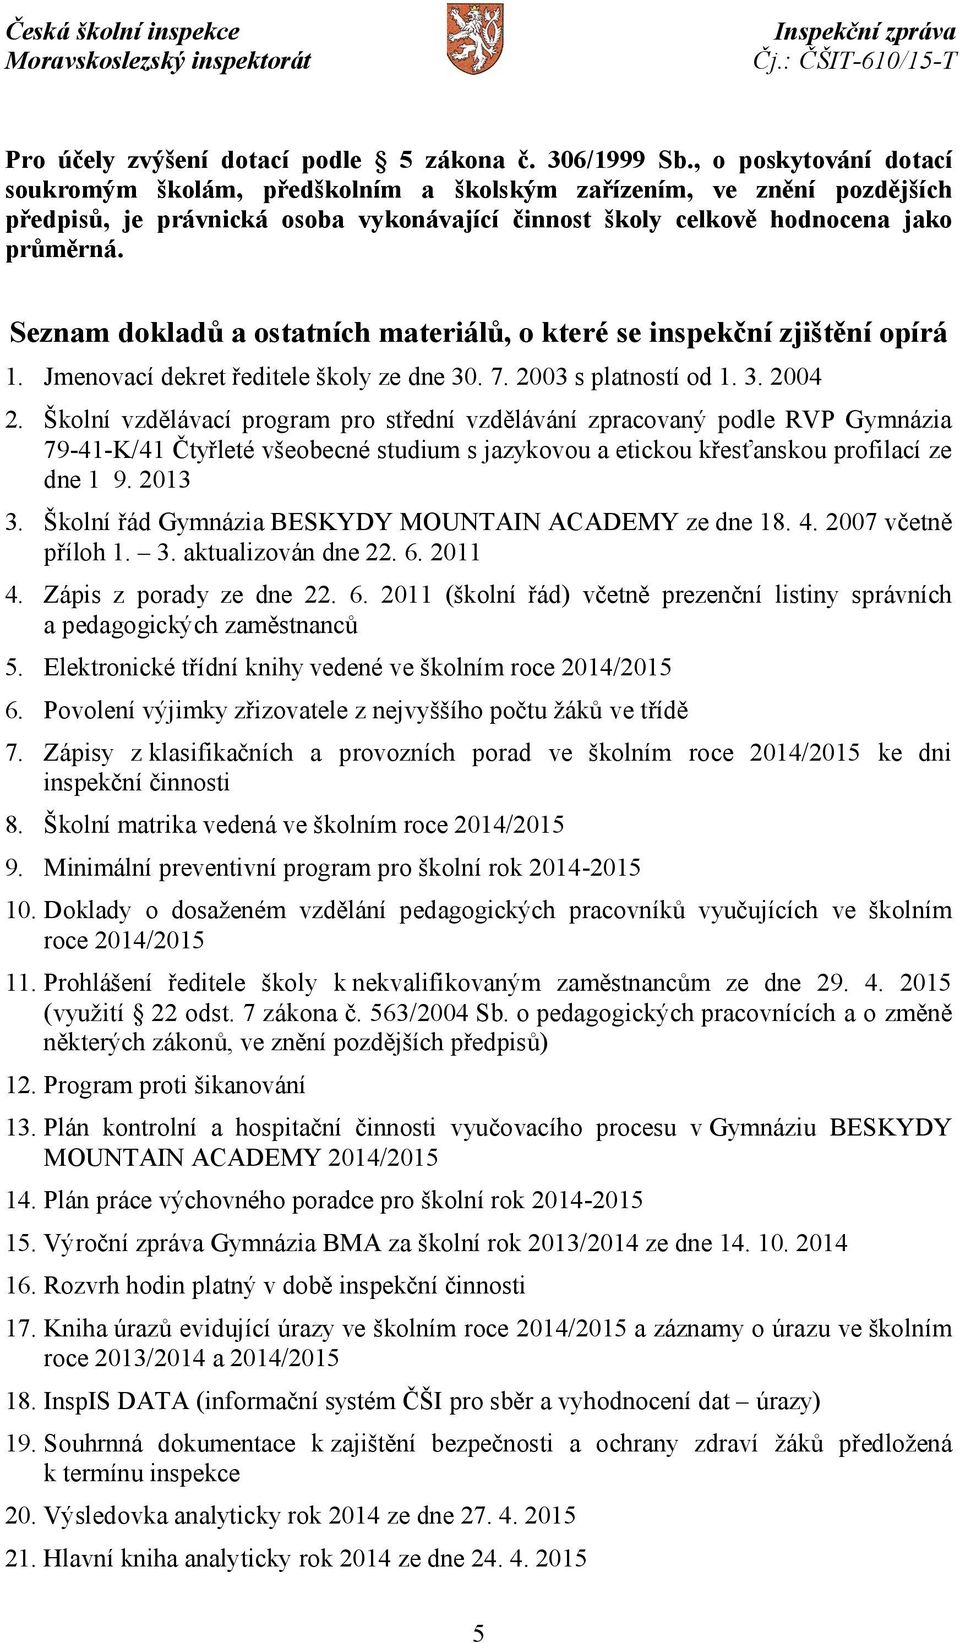 Seznam dokladů a ostatních materiálů, o které se inspekční zjištění opírá 1. Jmenovací dekret ředitele školy ze dne 30. 7. 2003 s platností od 1. 3. 2004 2.